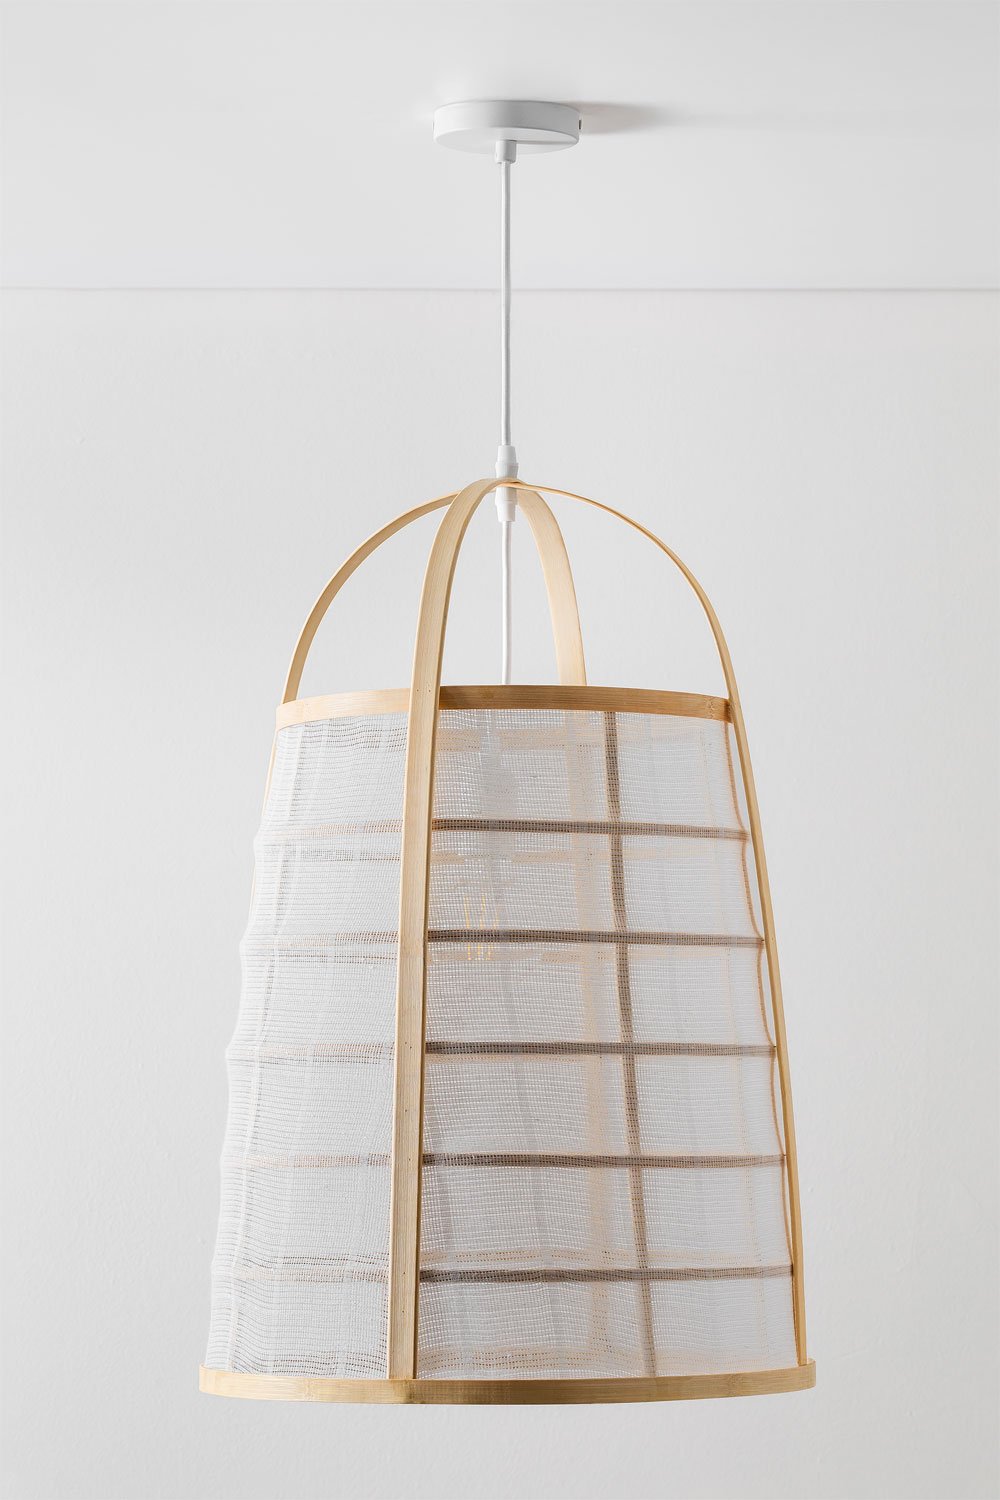 Lampa sufitowa z bambusa i bawełny (ø40 cm) Mikayla, obrazek w galerii 1